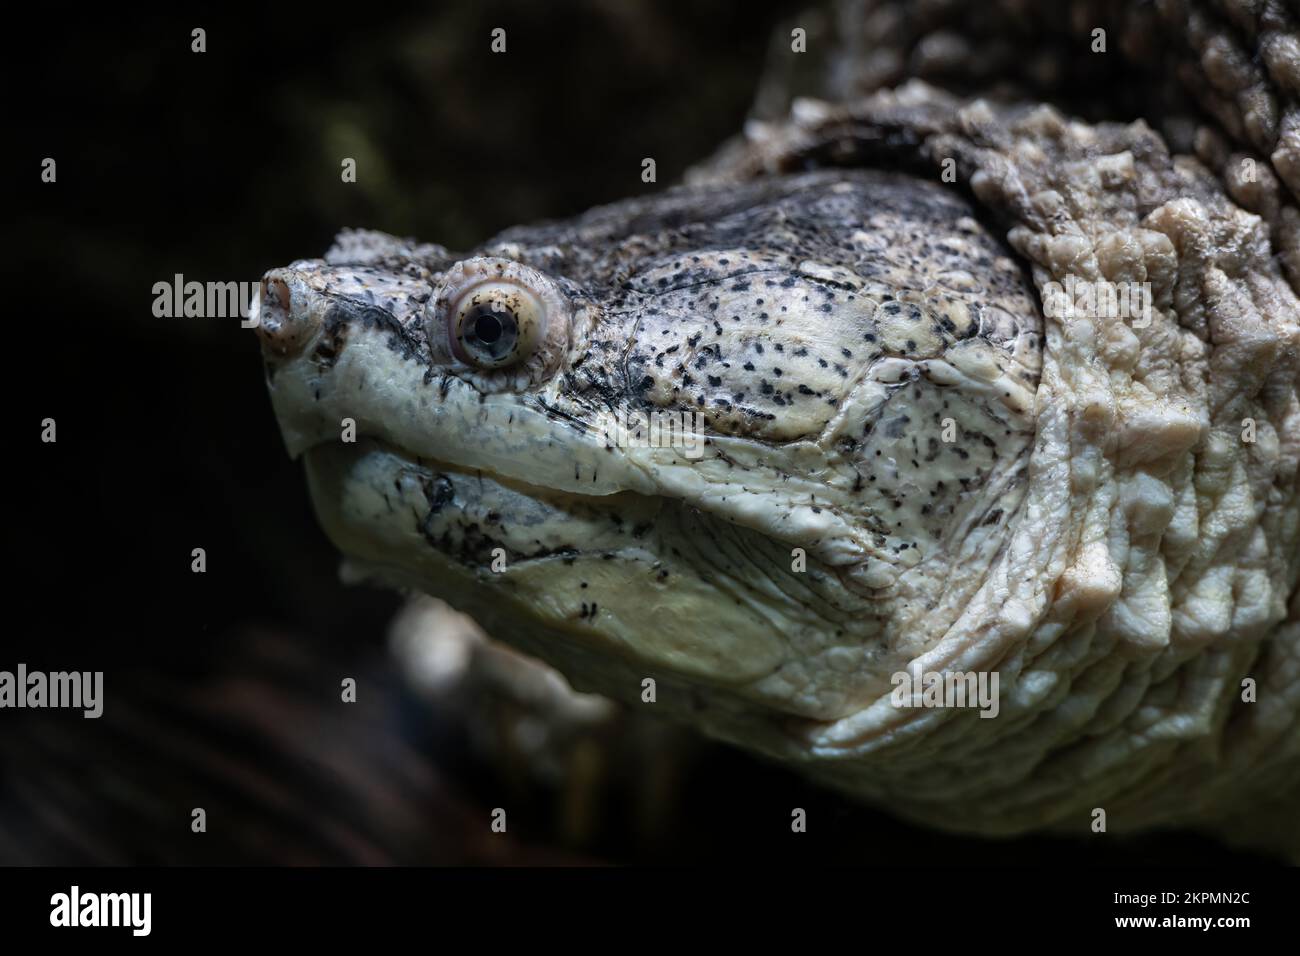 La testa comune tartaruga scattante (Chelydra serpentina), ritratto subacqueo di grande tartaruga d'acqua dolce nella famiglia Chelydridae, regione nativa: Nord Foto Stock